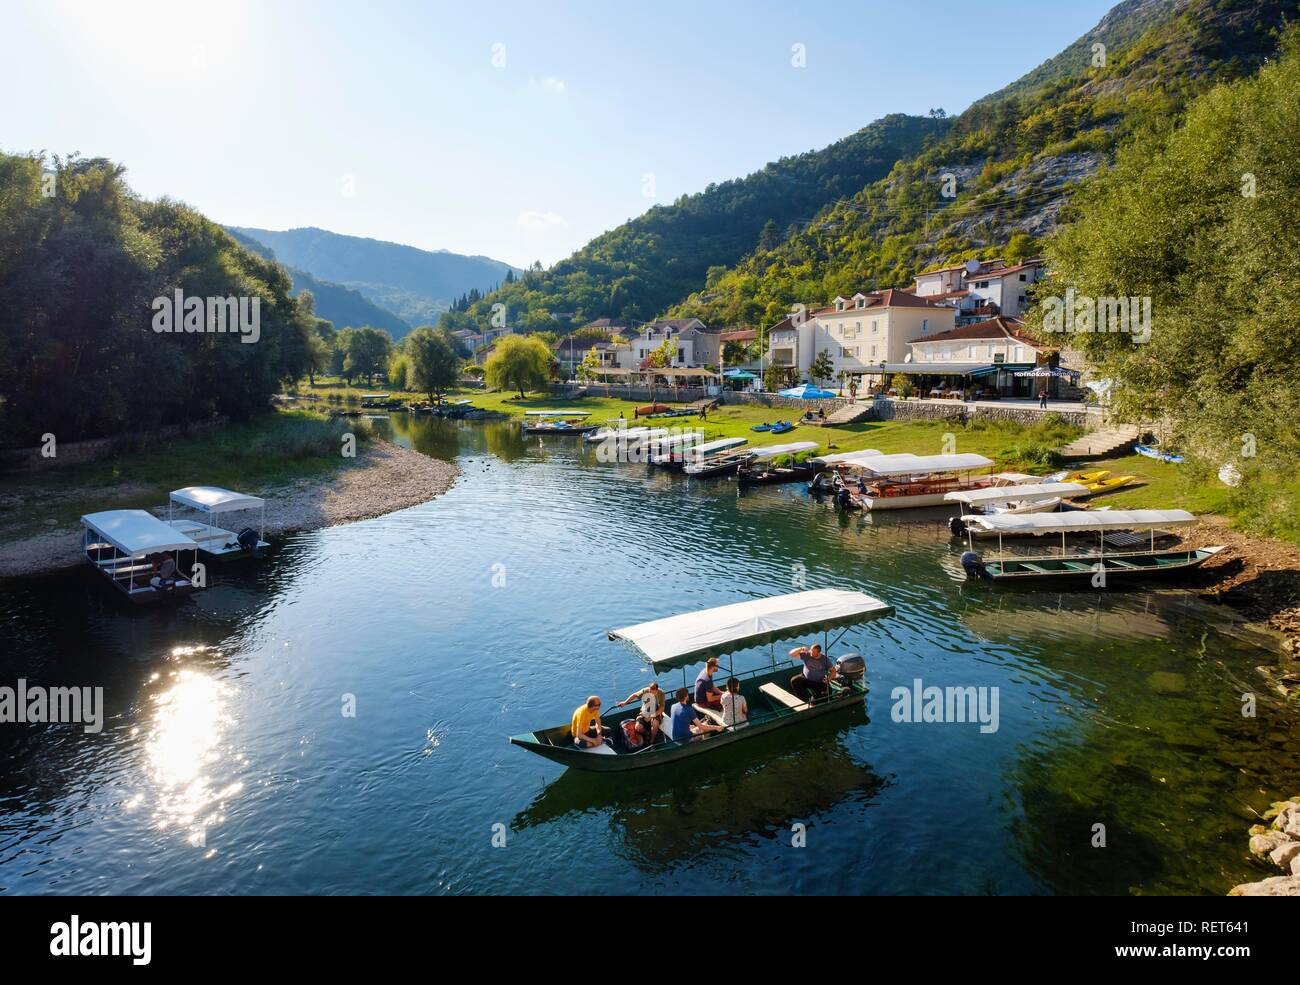 Boats on river Rijeka Crnojevica Crnojevic, Parc National, le lac de Skadar, près de Cetinje, Monténégro Banque D'Images